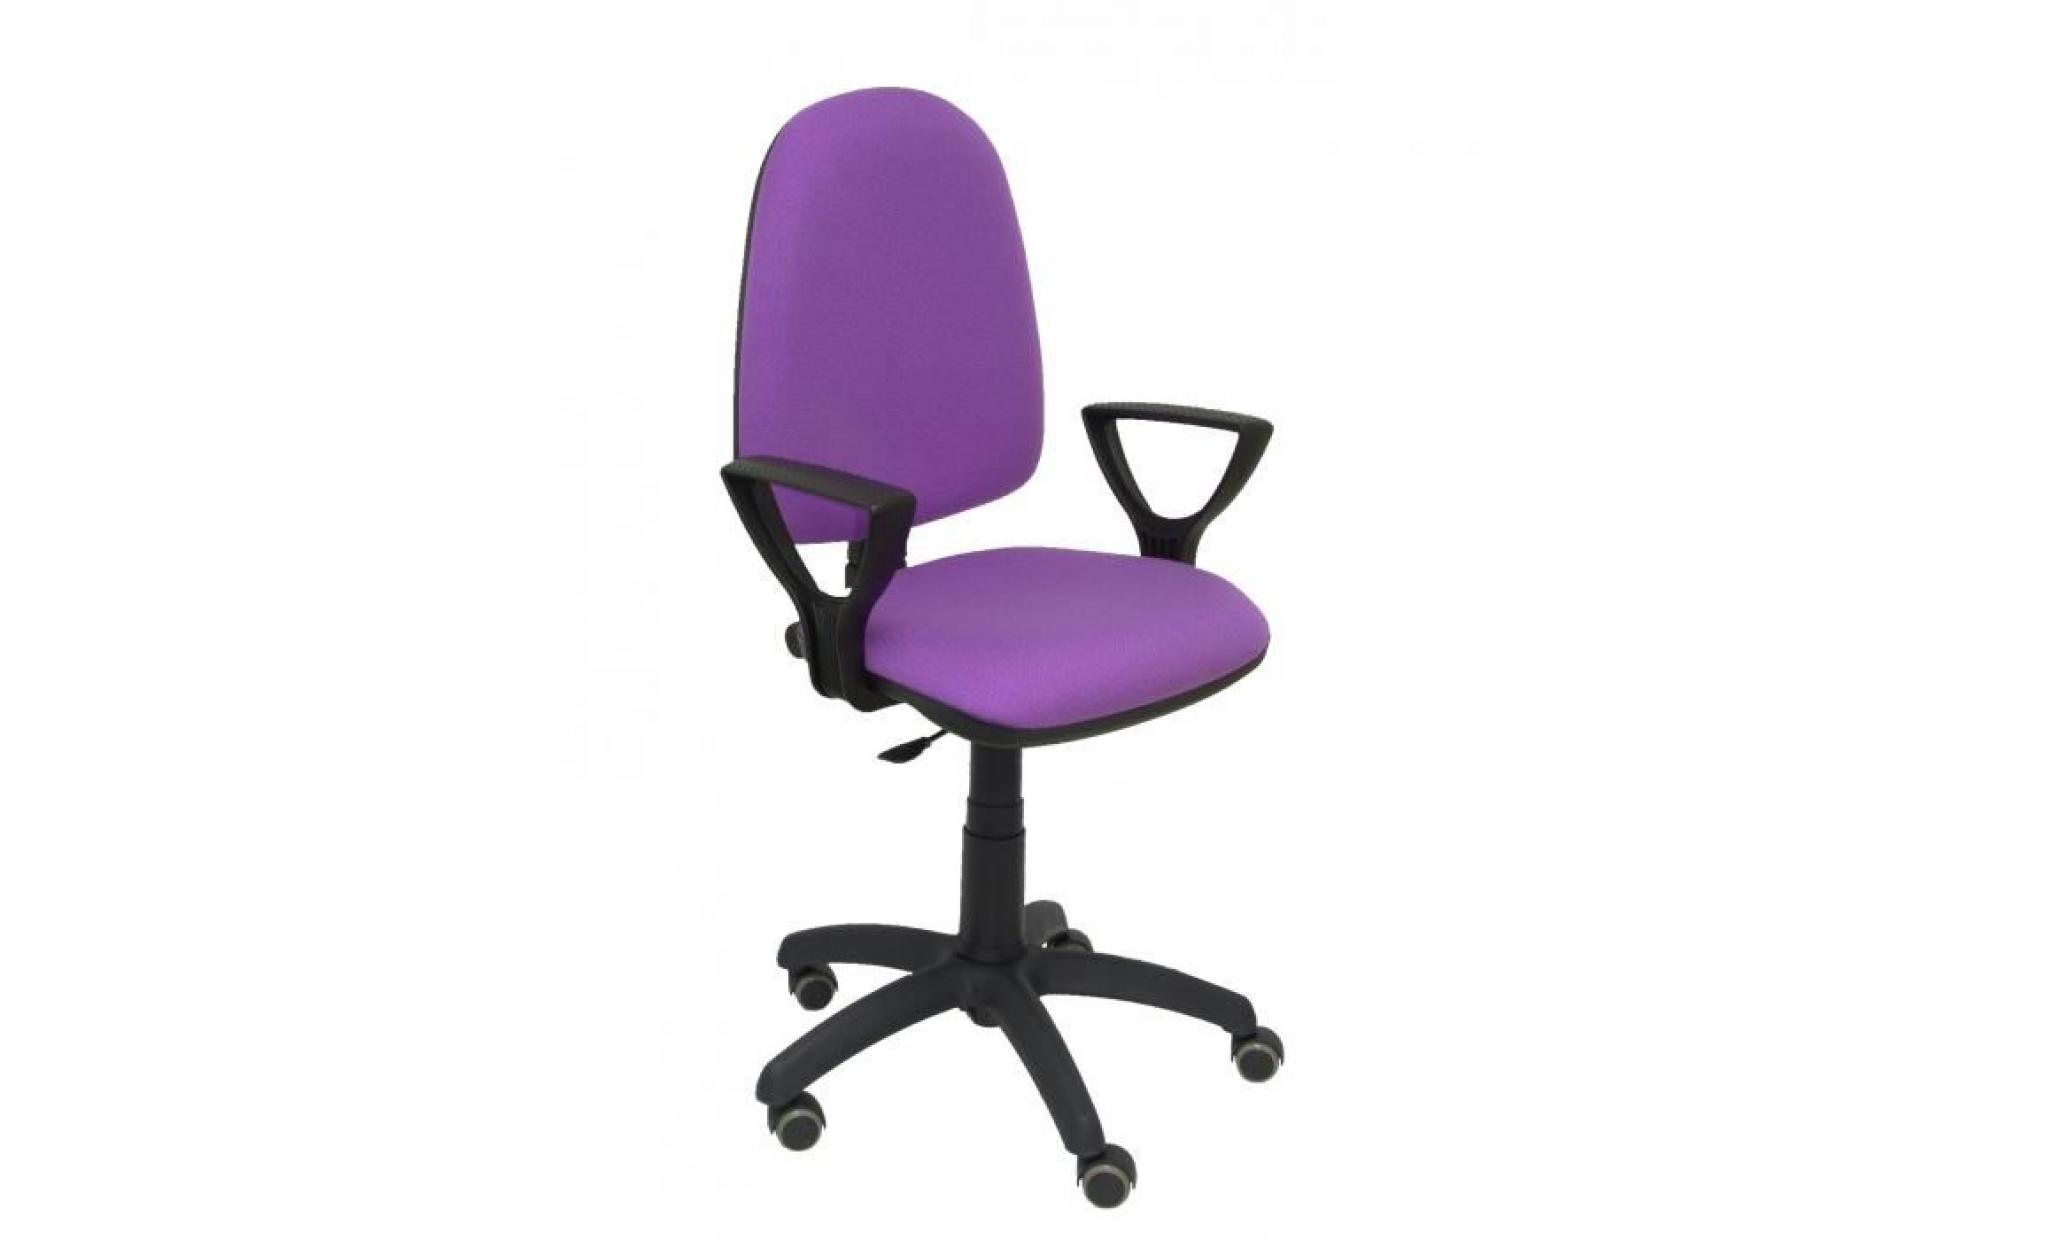 modèle 04cpbali82bgolfrp chaise de bureau ergonomique avec mécanisme de contact permanent, réglable en hauteur et roues de parquet